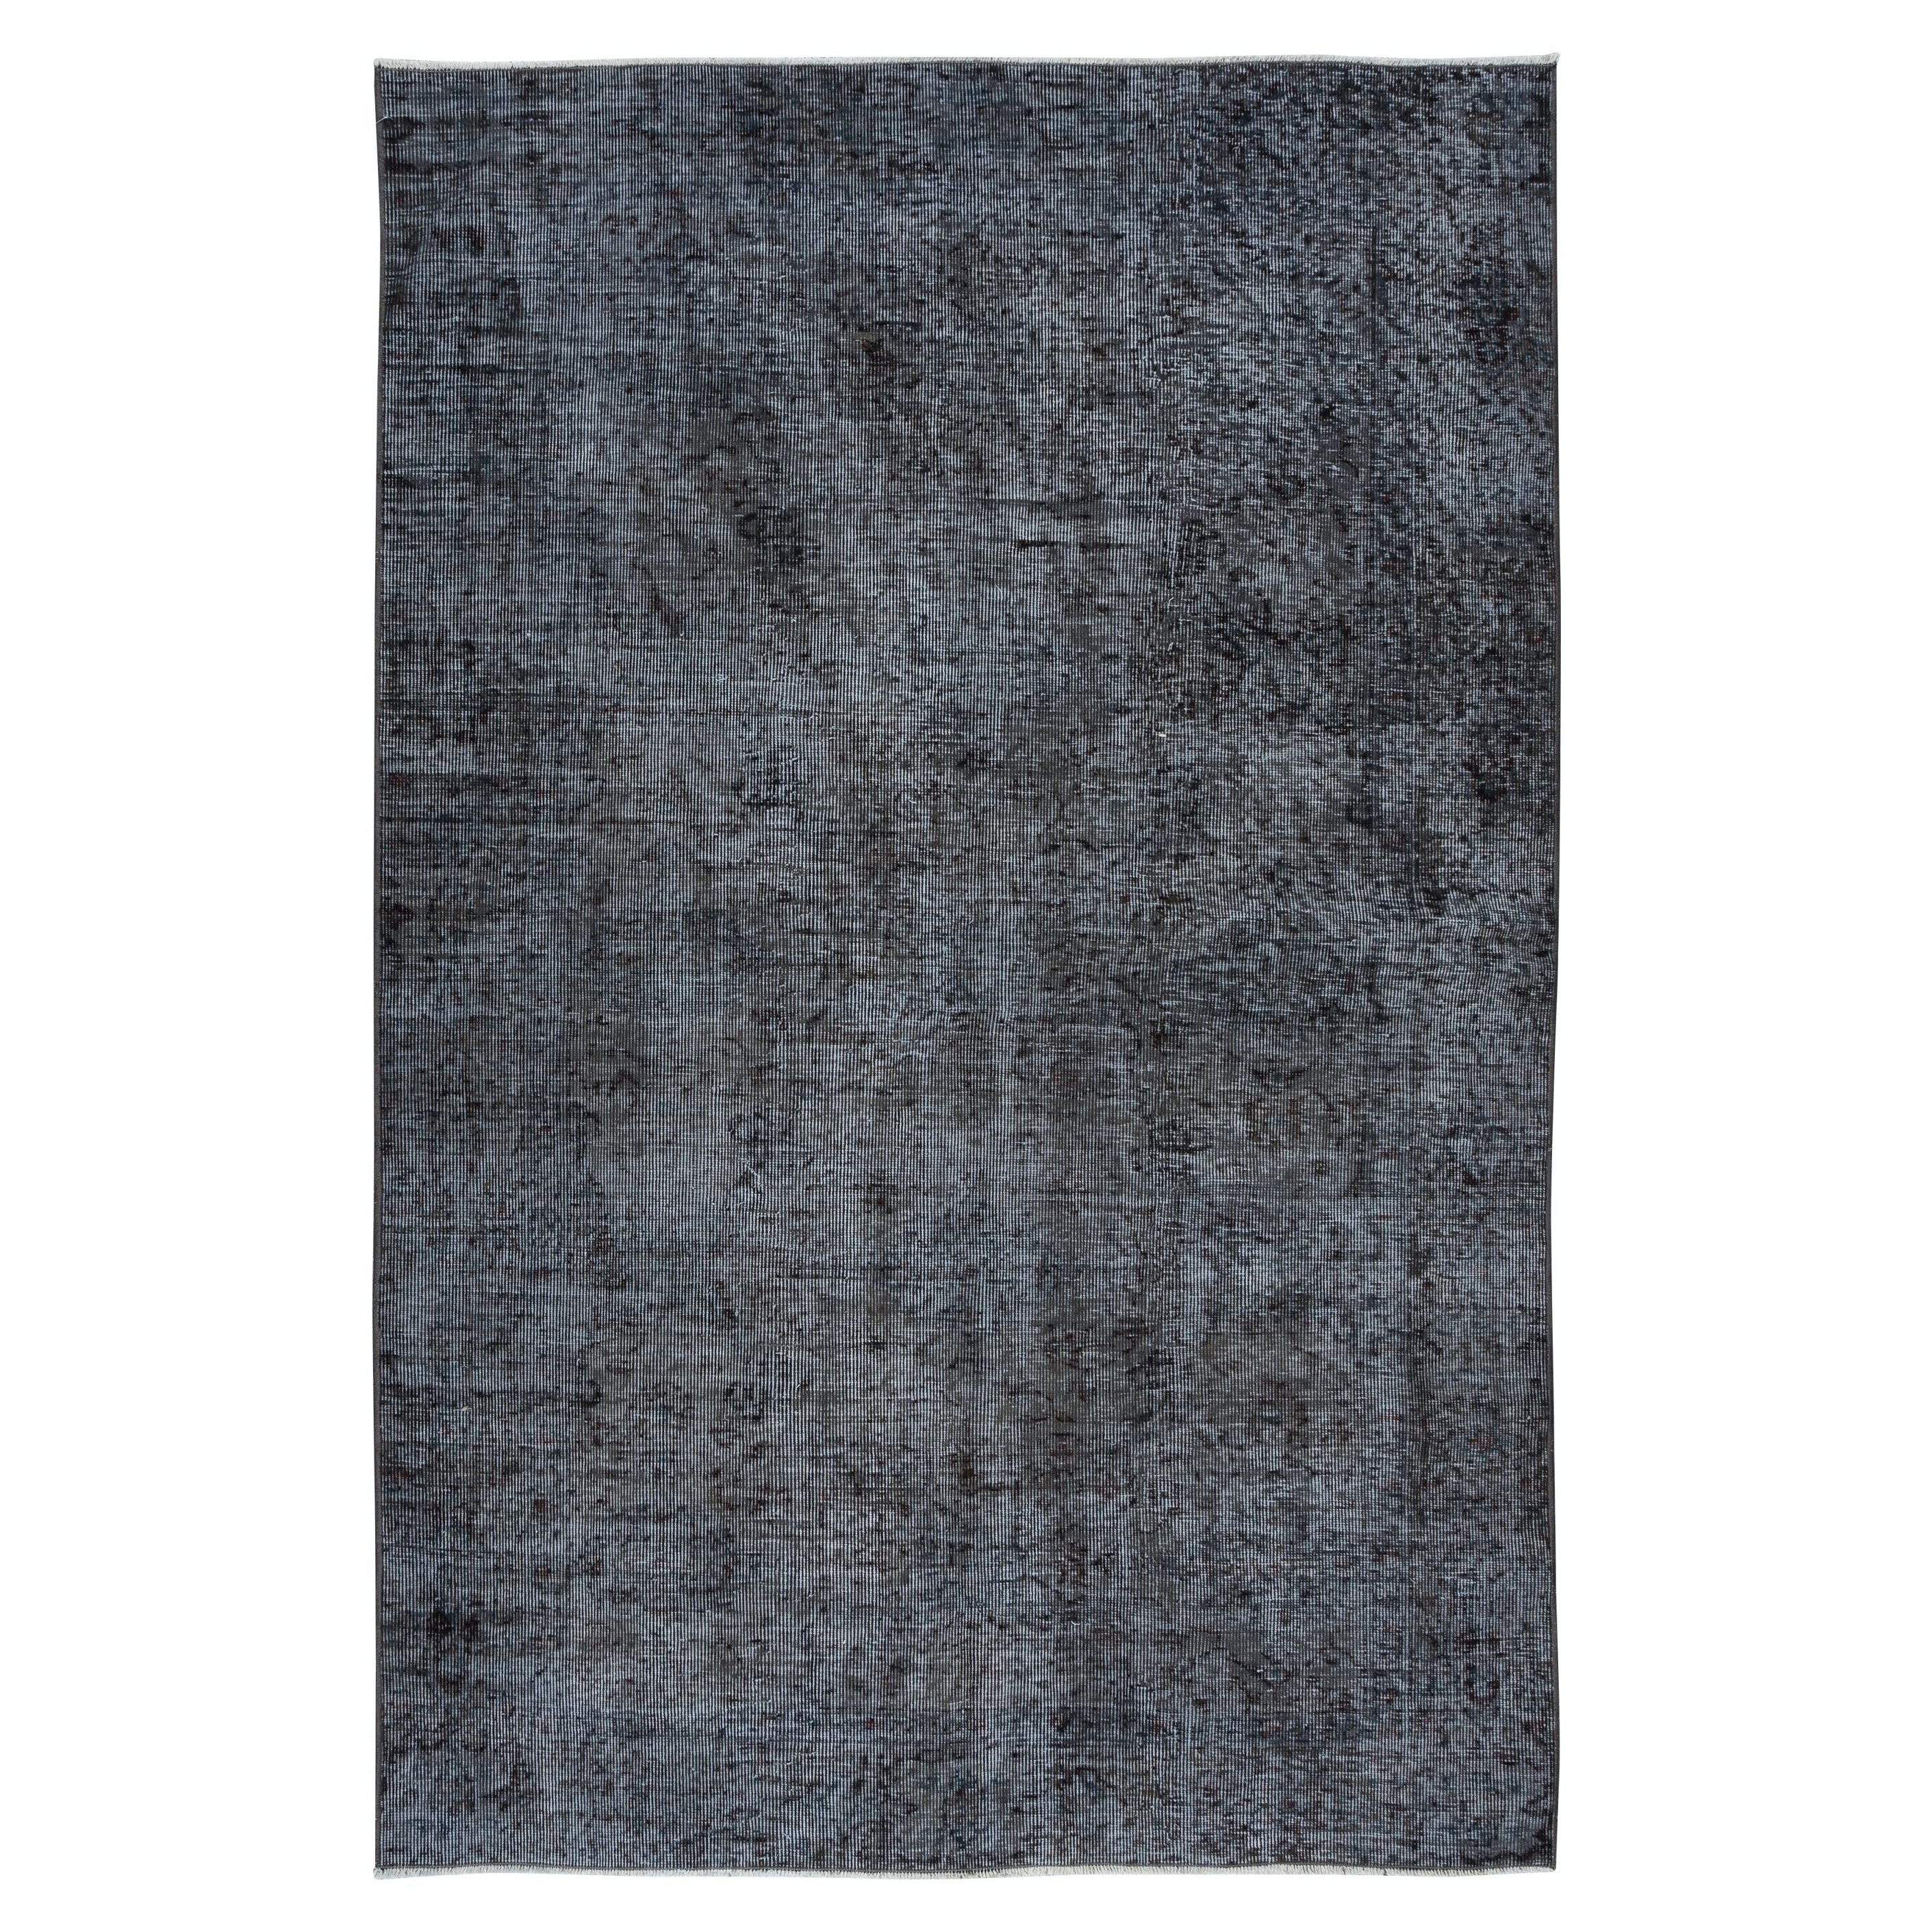 4.8x7.2 Ft Turc Tapis en laine fait à la main dans les tons gris, idéal pour les intérieurs Modernity